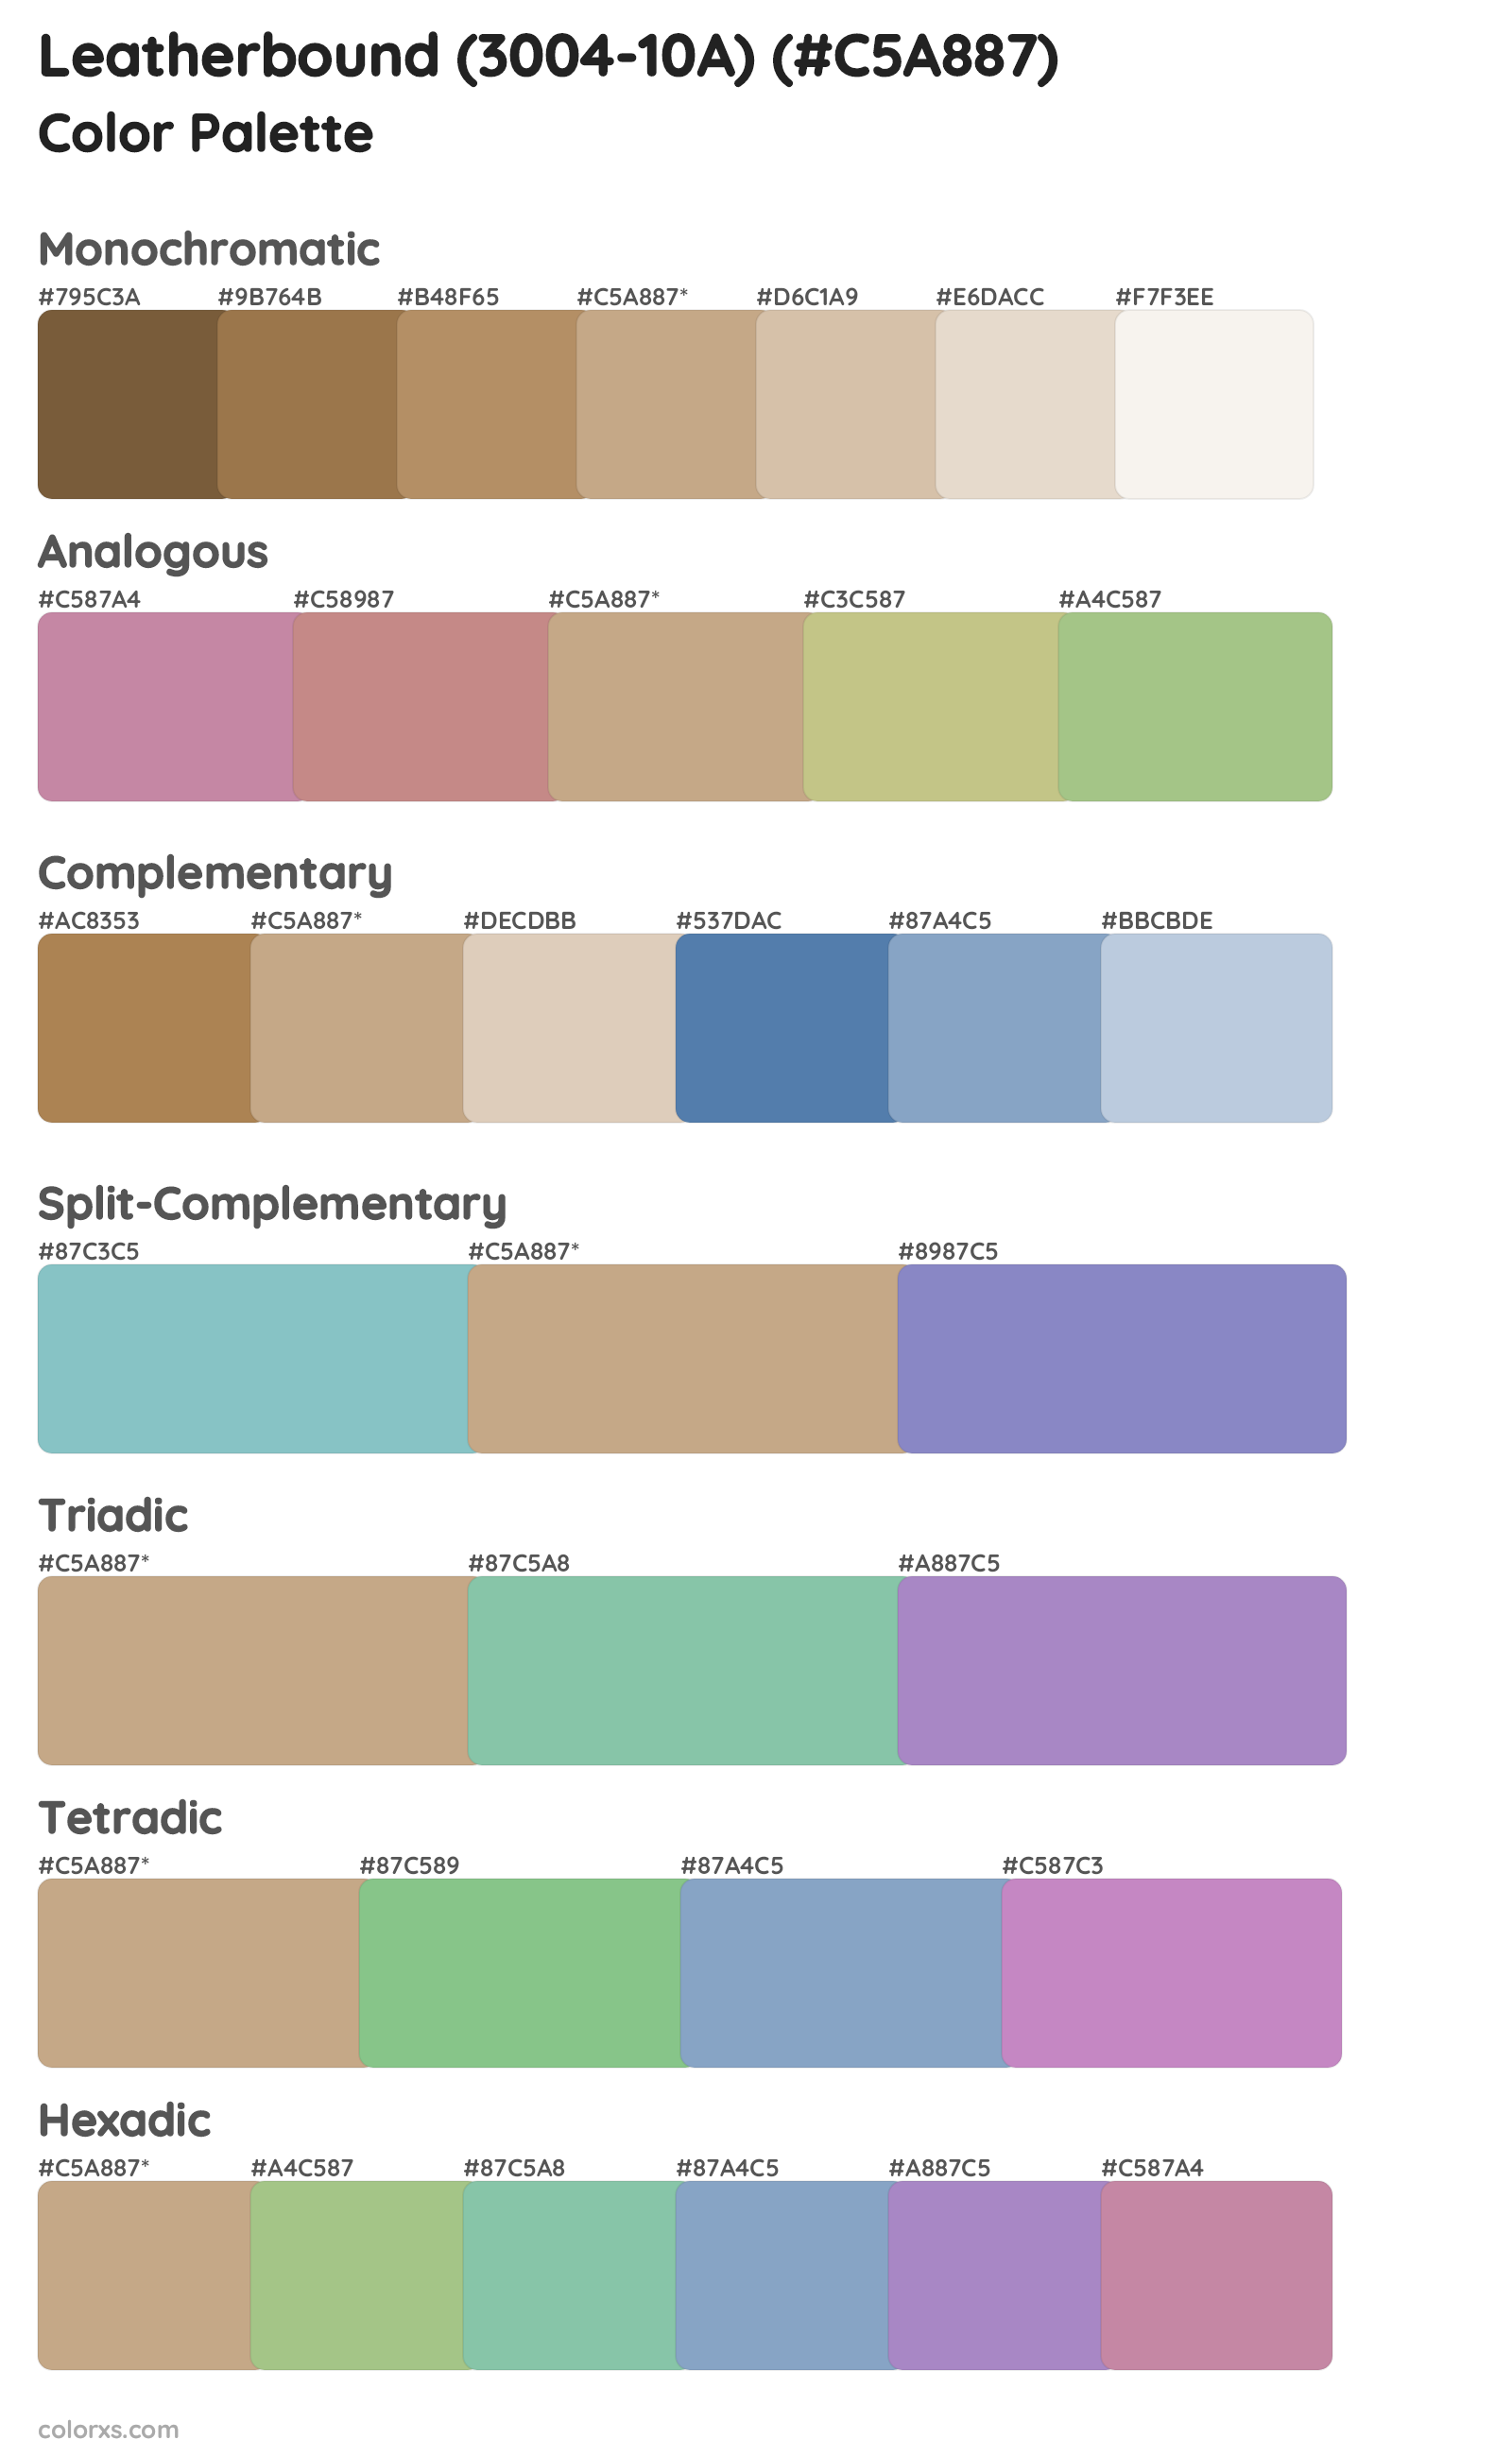 Leatherbound (3004-10A) Color Scheme Palettes